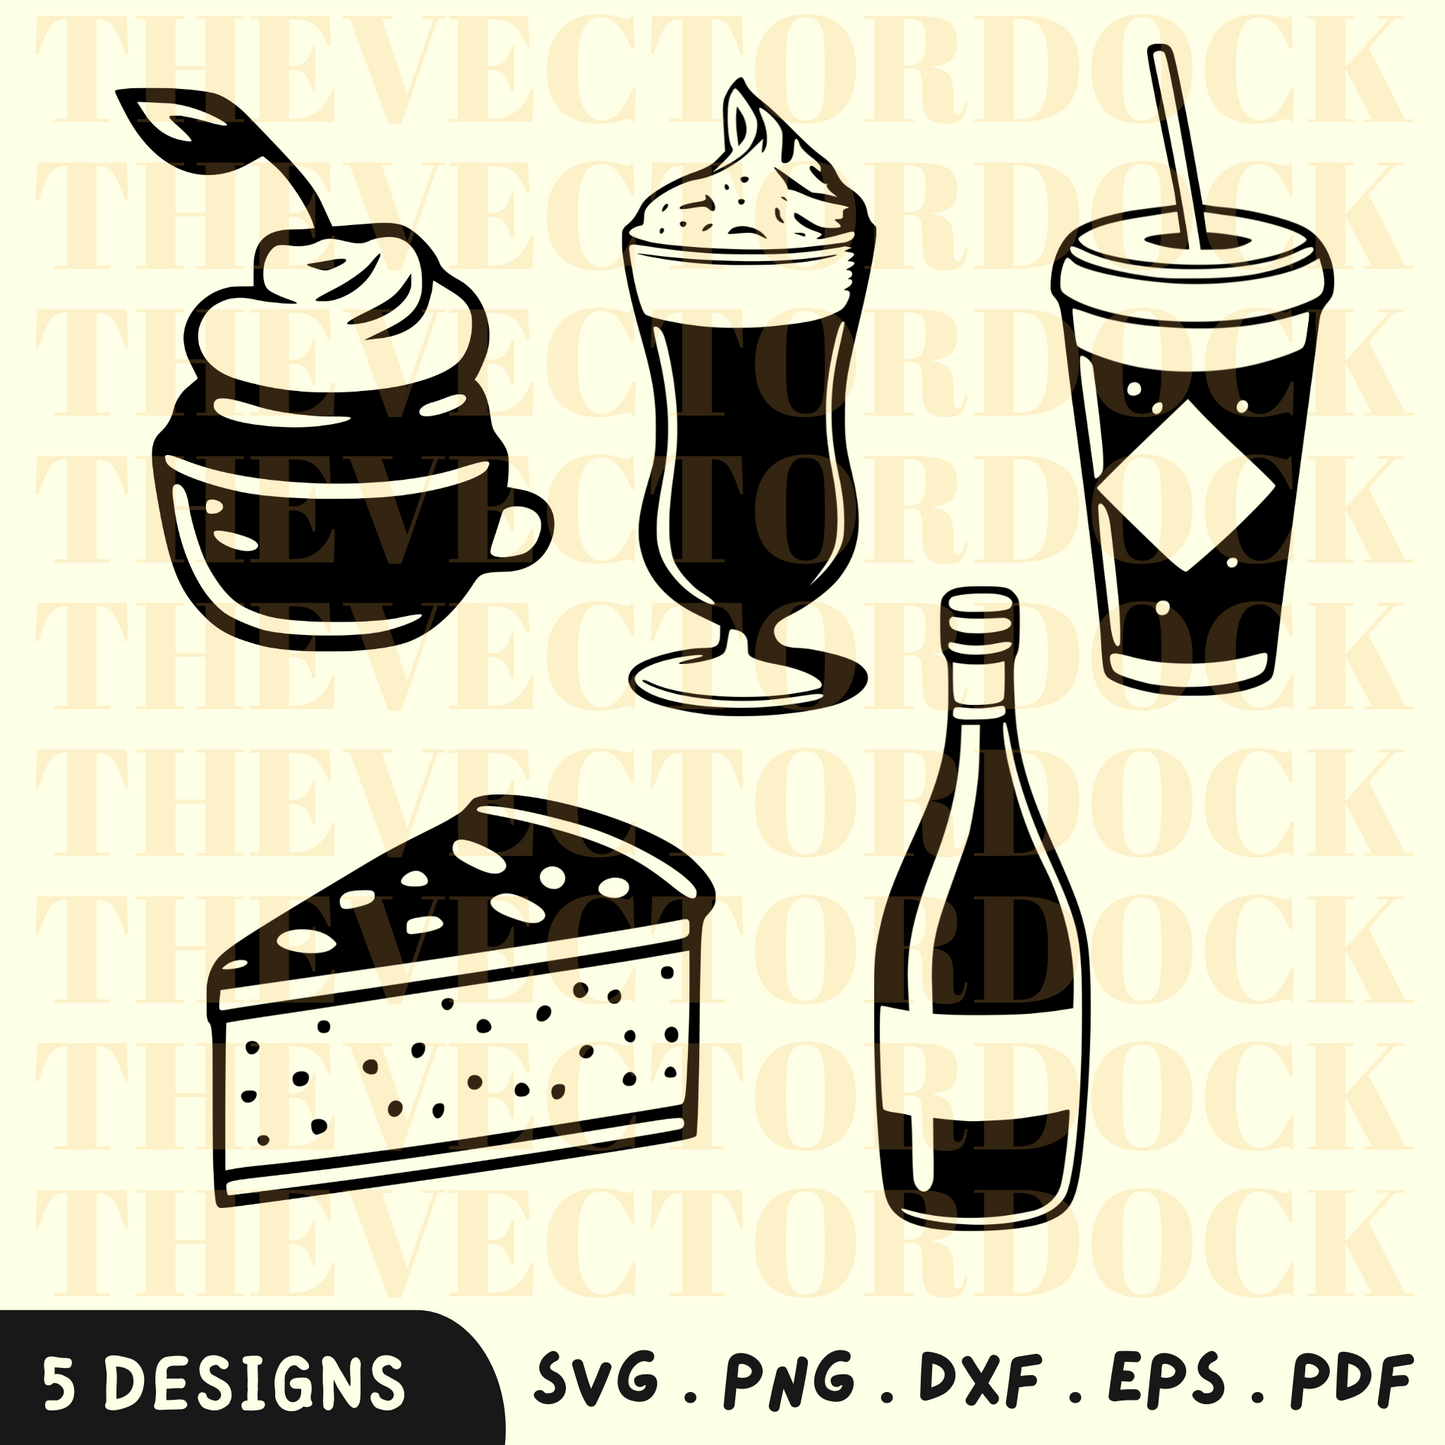 Food SVG Bundle, Food PNG, Food Theme SVG, Food SVG Bundle, Food Vector Bundle: 5 Designs